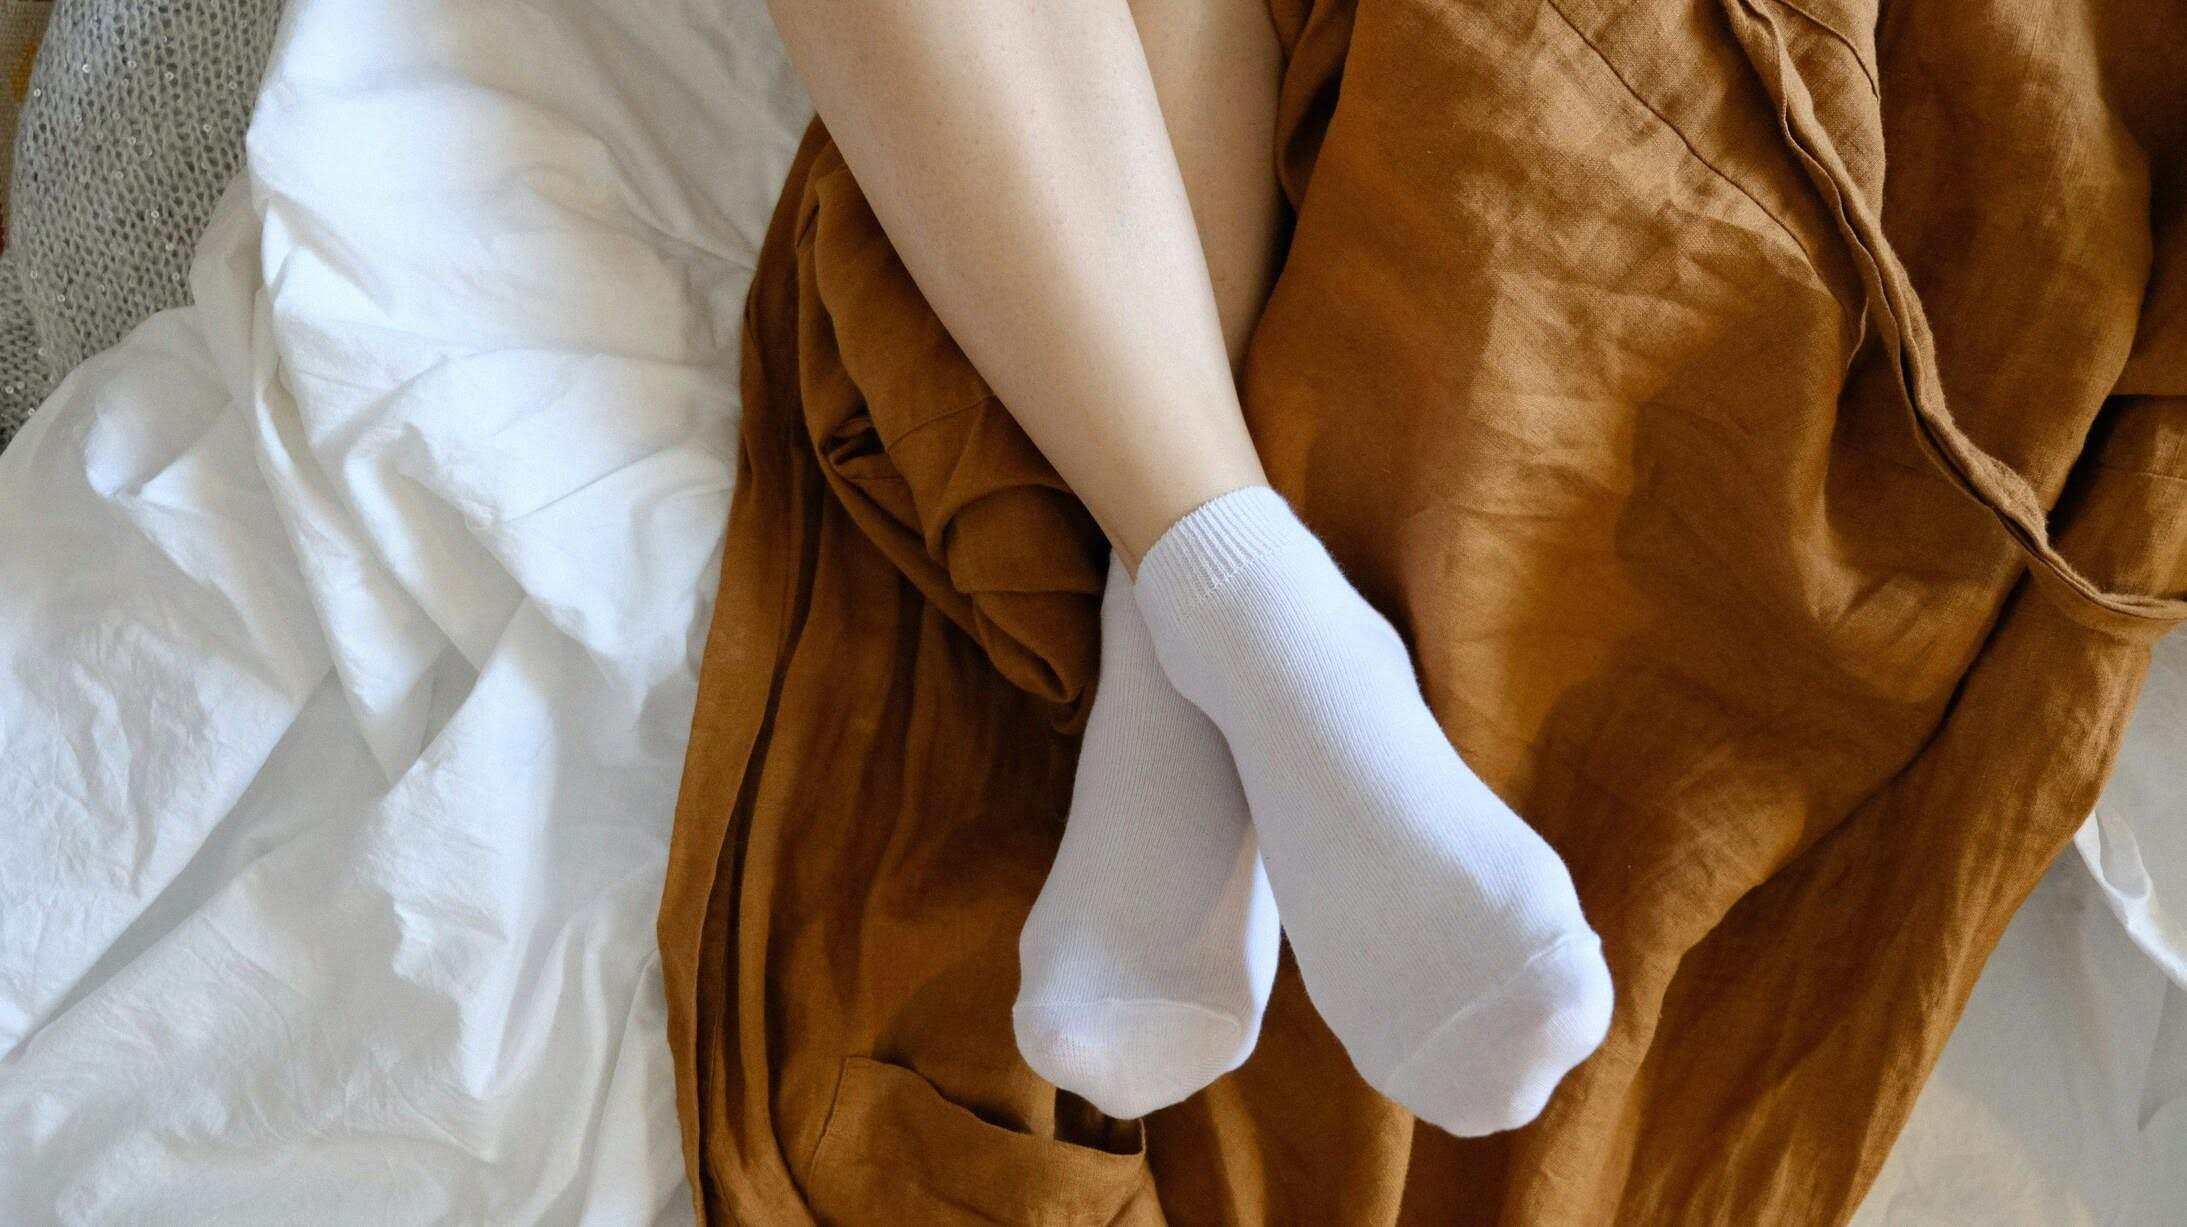 El truco para que tus calcetines se conserven blancos y parezcan siempre nuevos